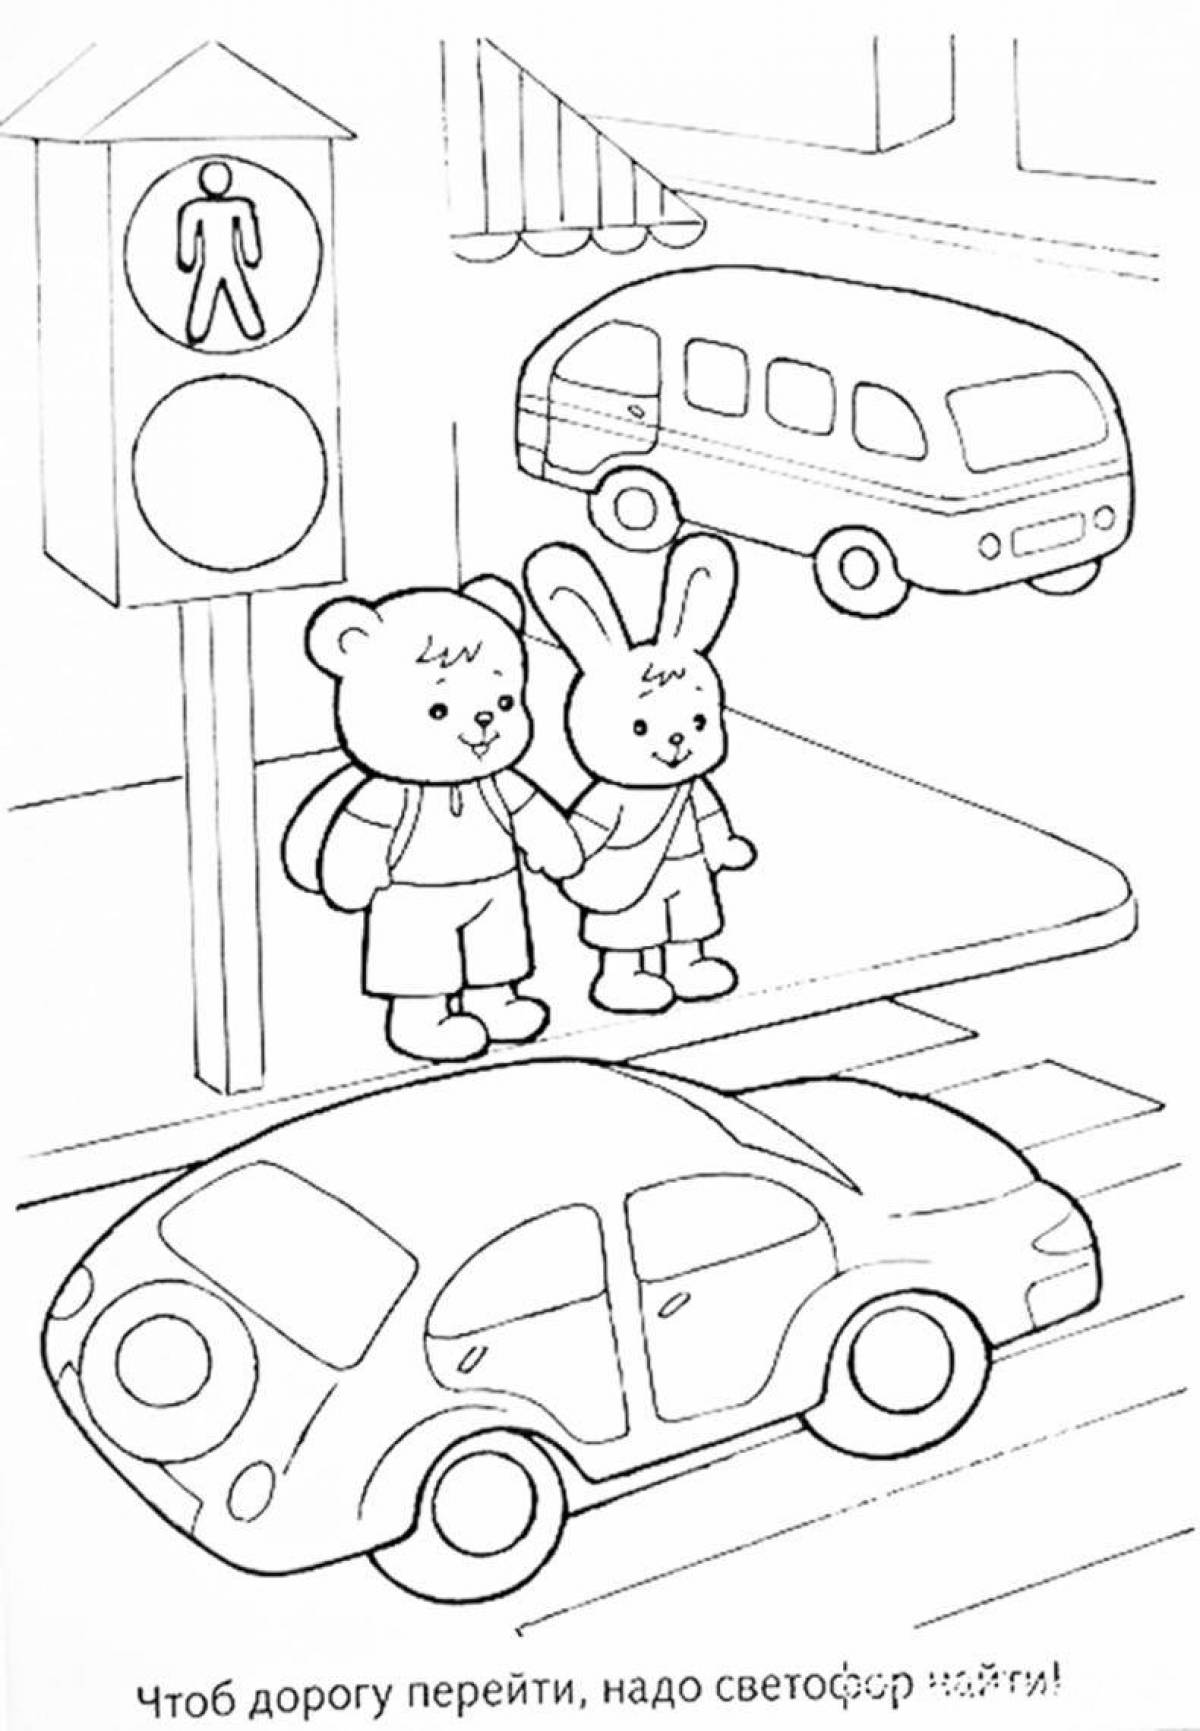 Развлекательная раскраска «правила дорожного движения» для детей 3-4 лет